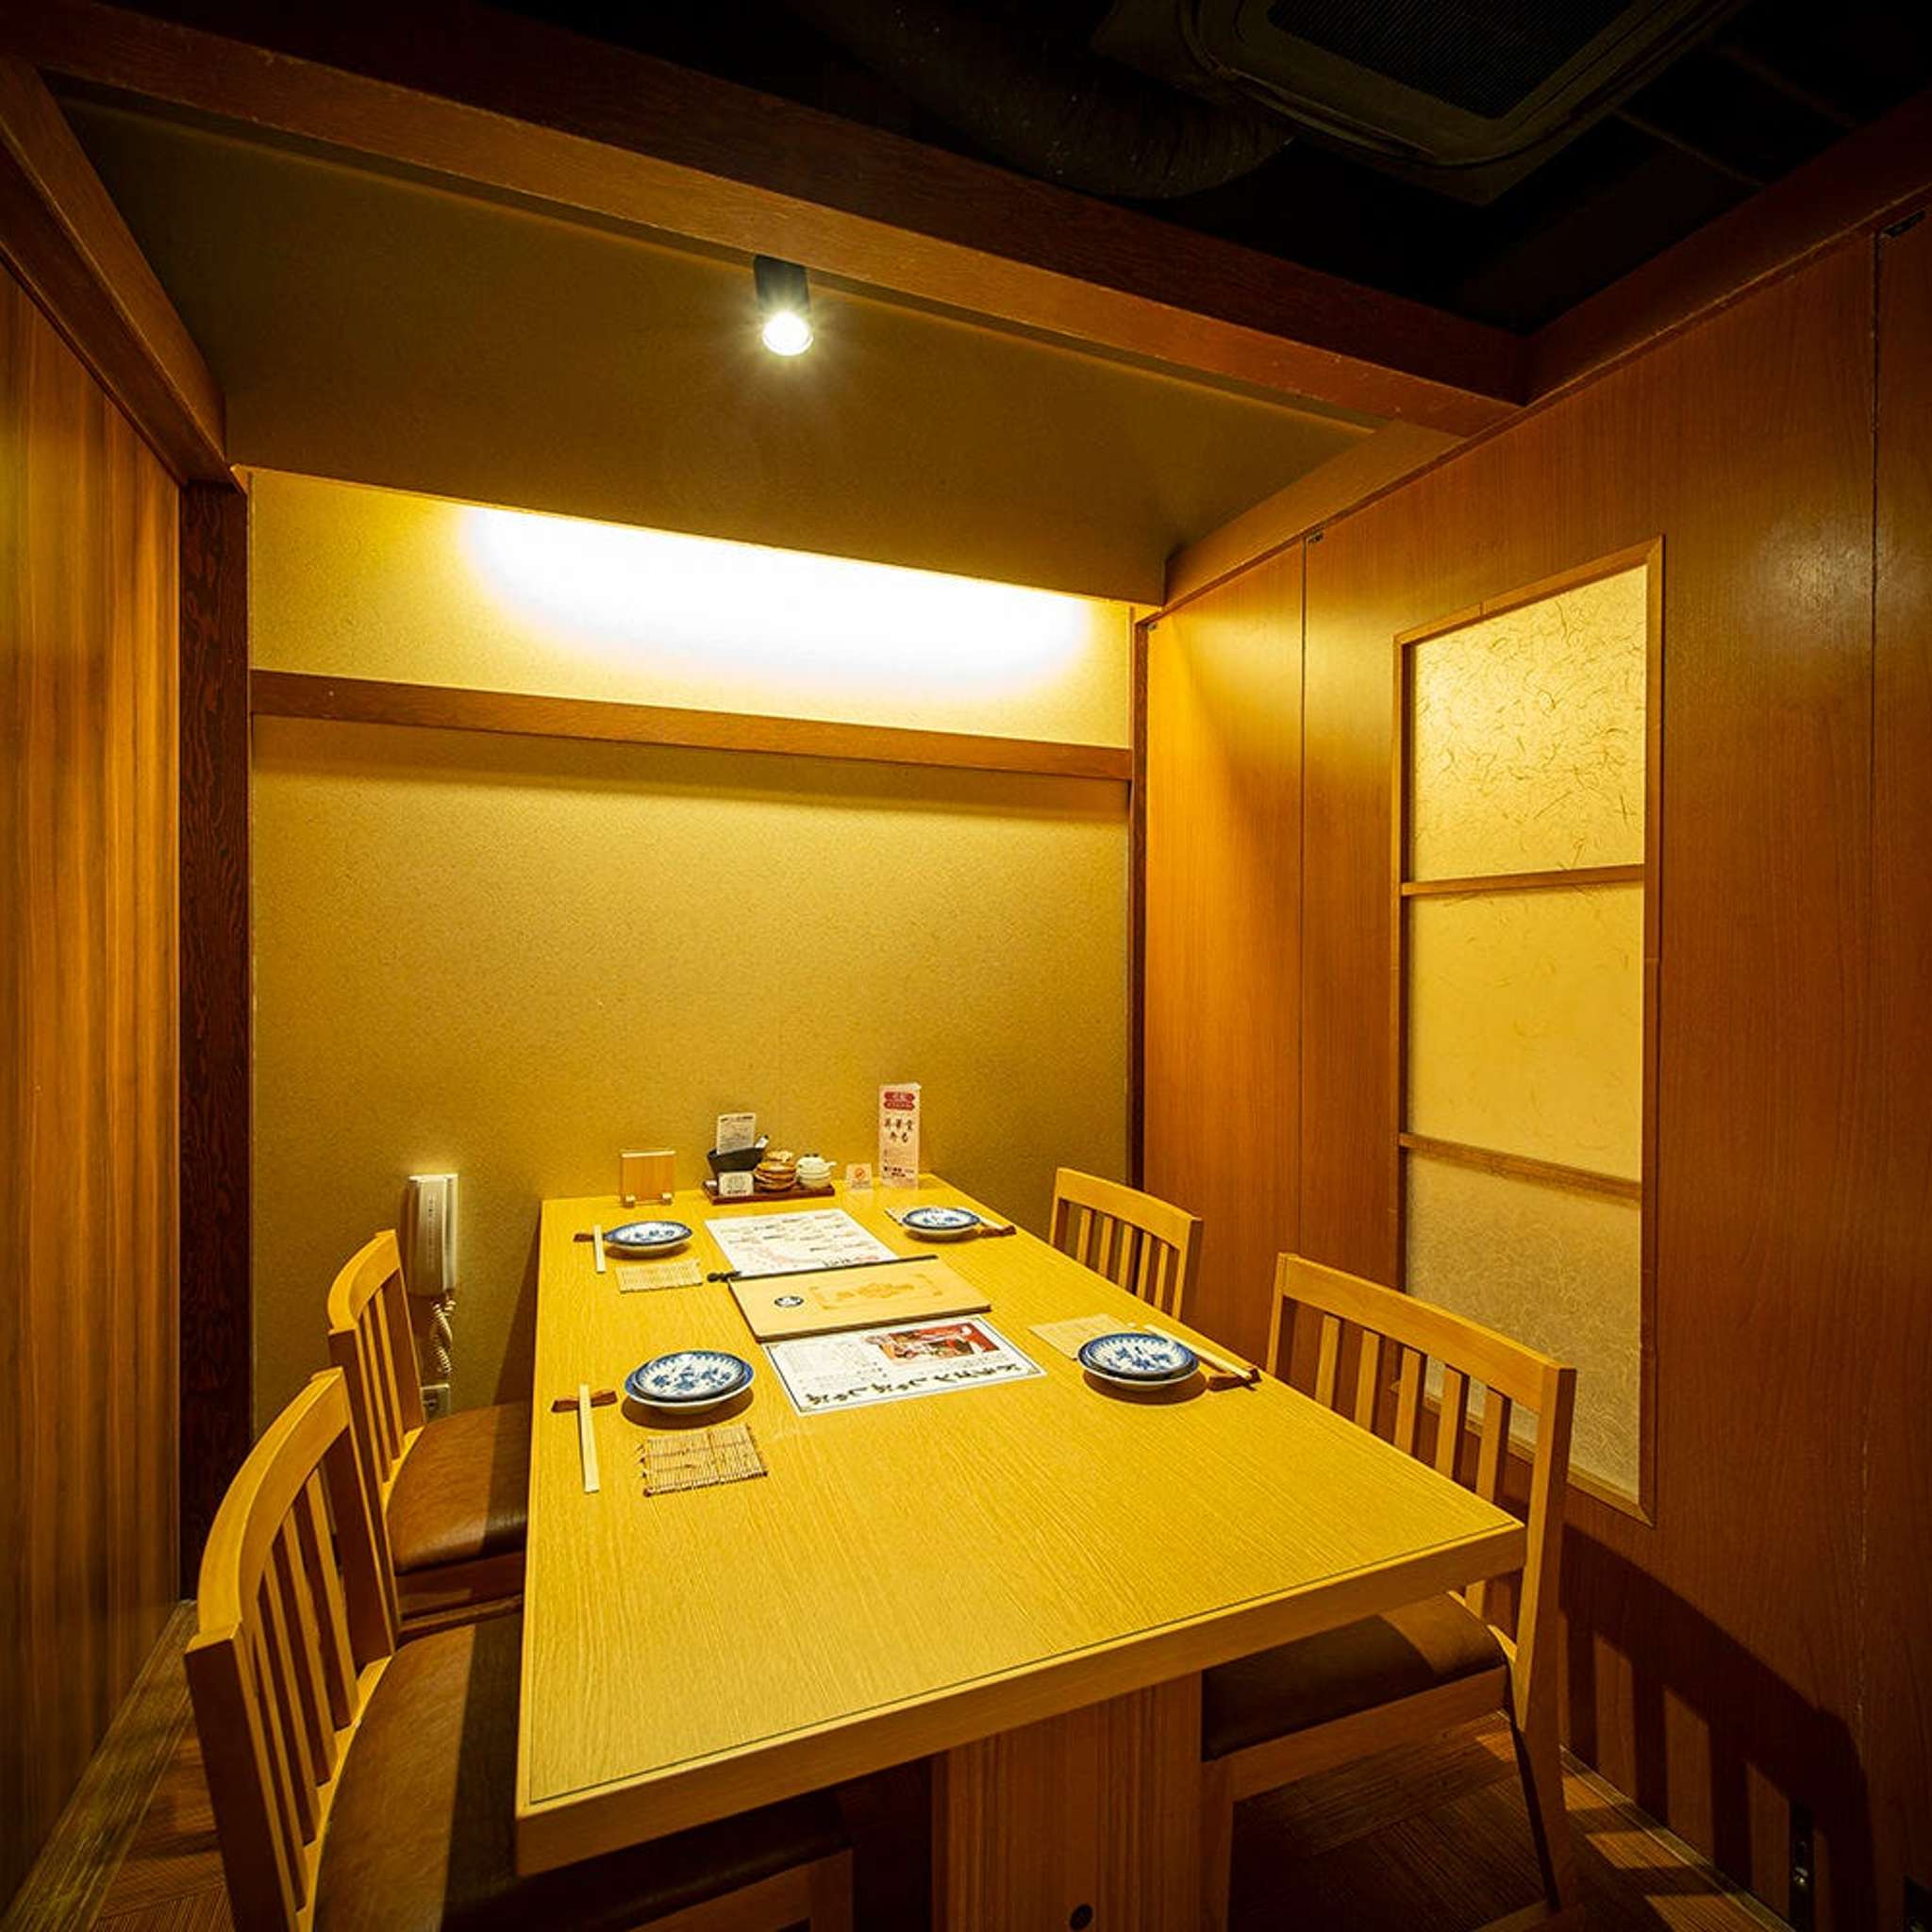 [桌席/4人] 完全私人的小房间，非常适合约会、娱乐、情侣用餐